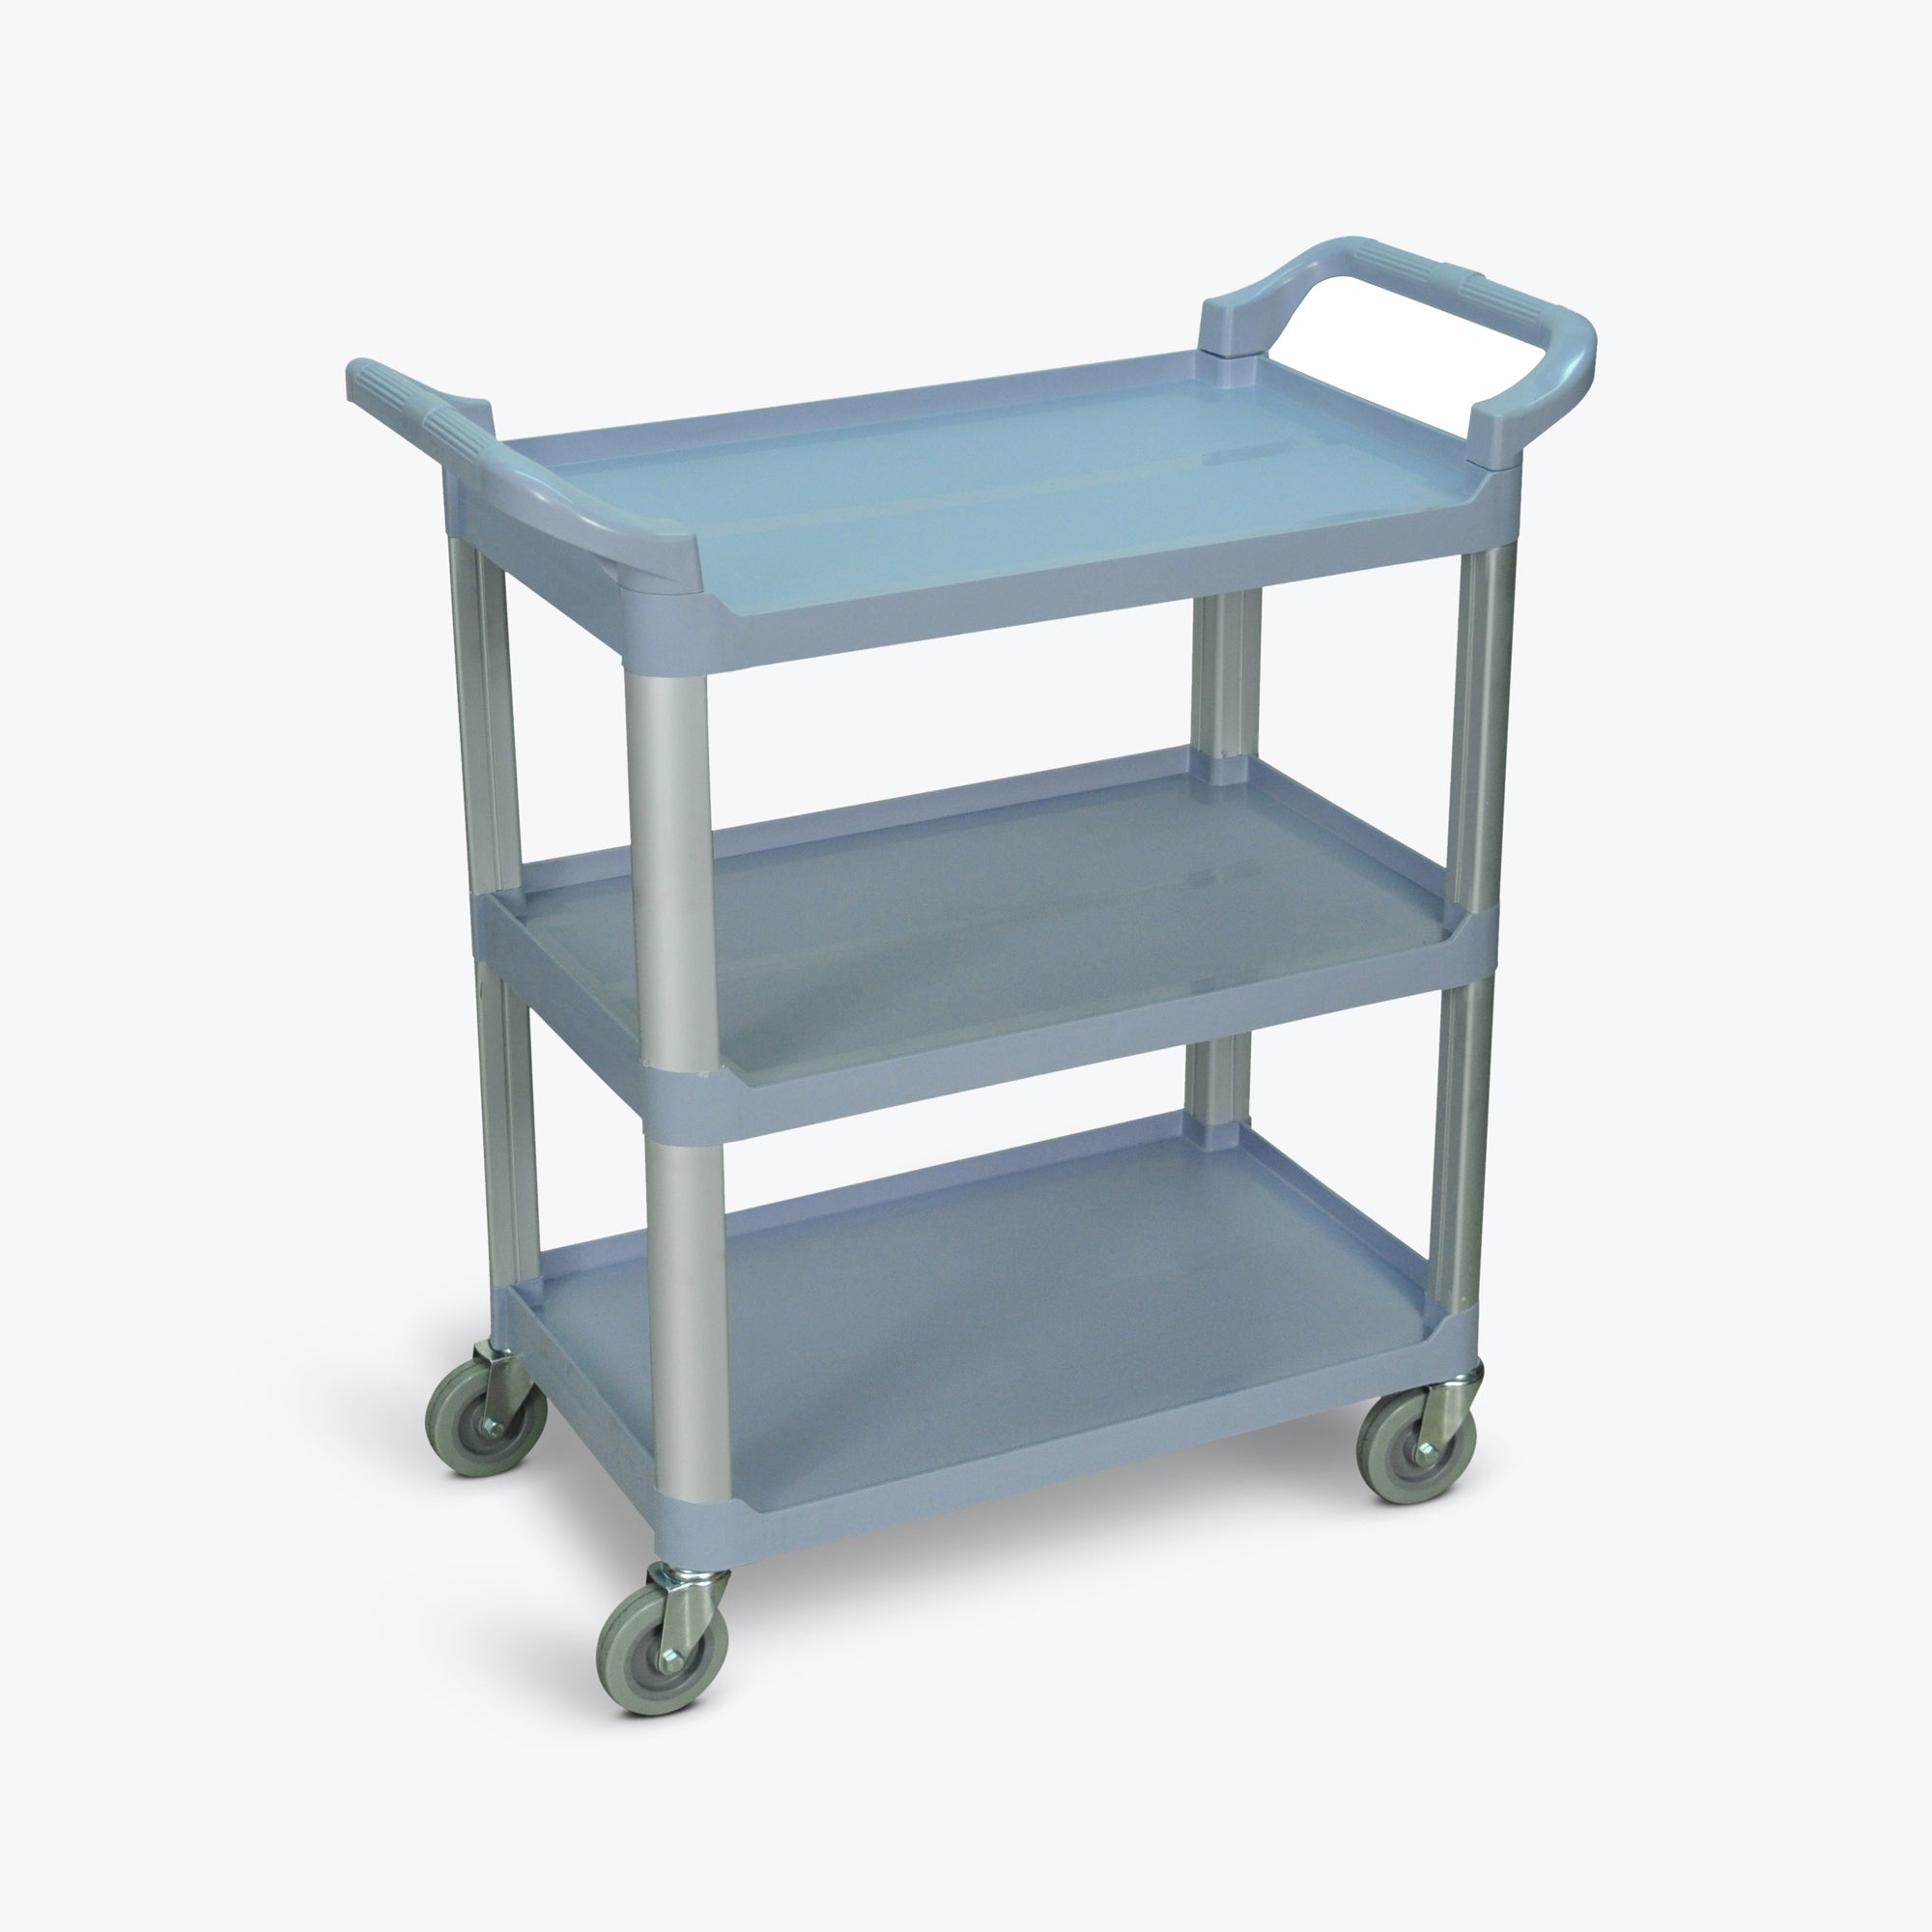 Luxor 3-Shelf Serving Cart 33.5"W x 16.75"D x 36.75"H (Gray) - SC12-G